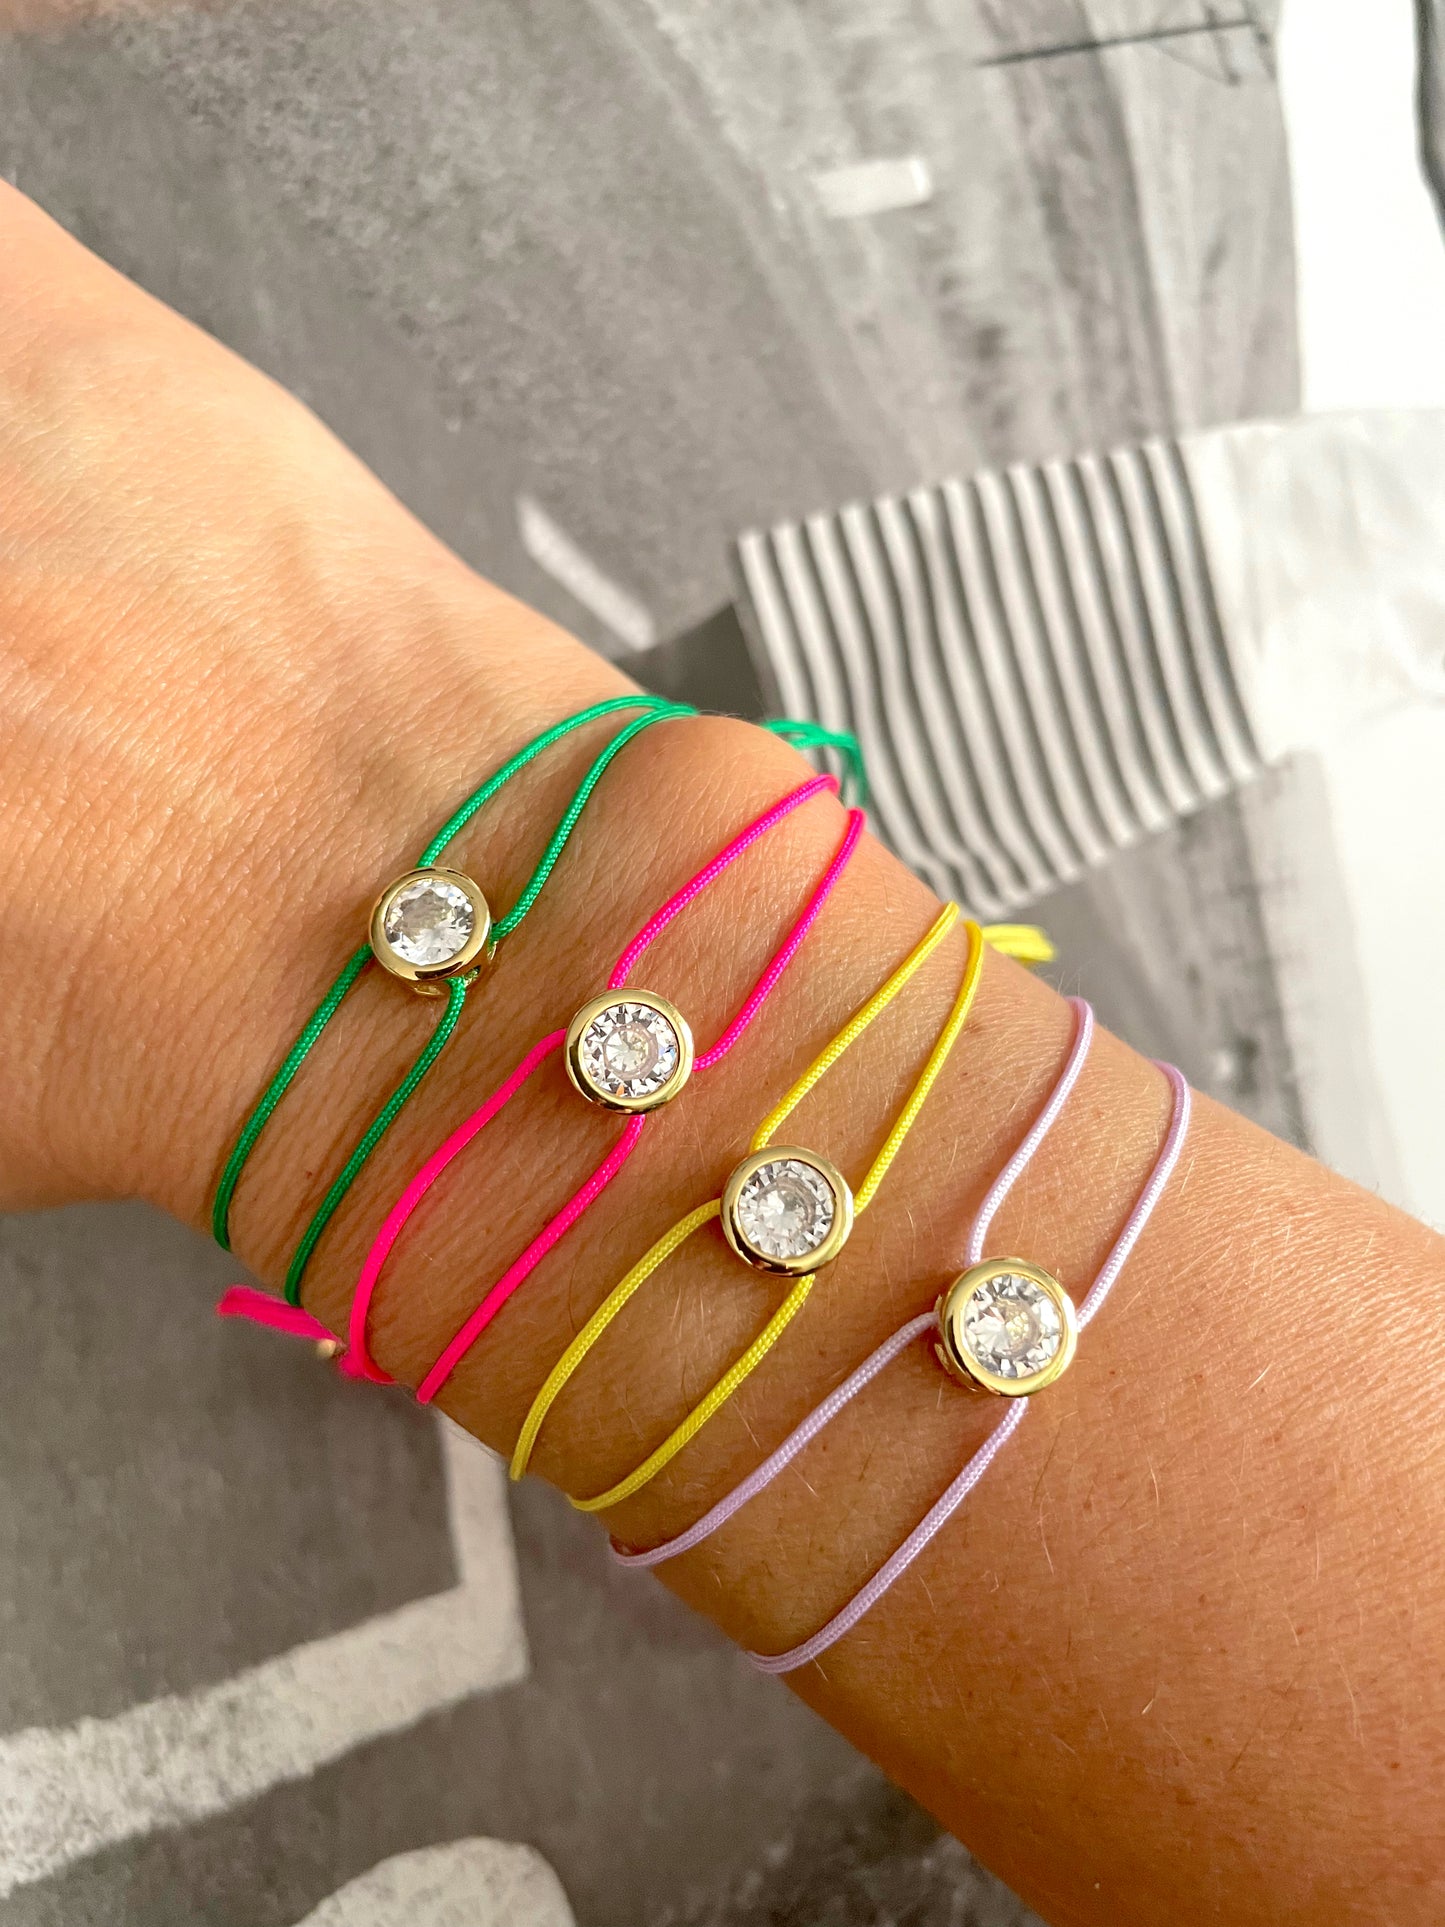 Round Zircon colored bracelets